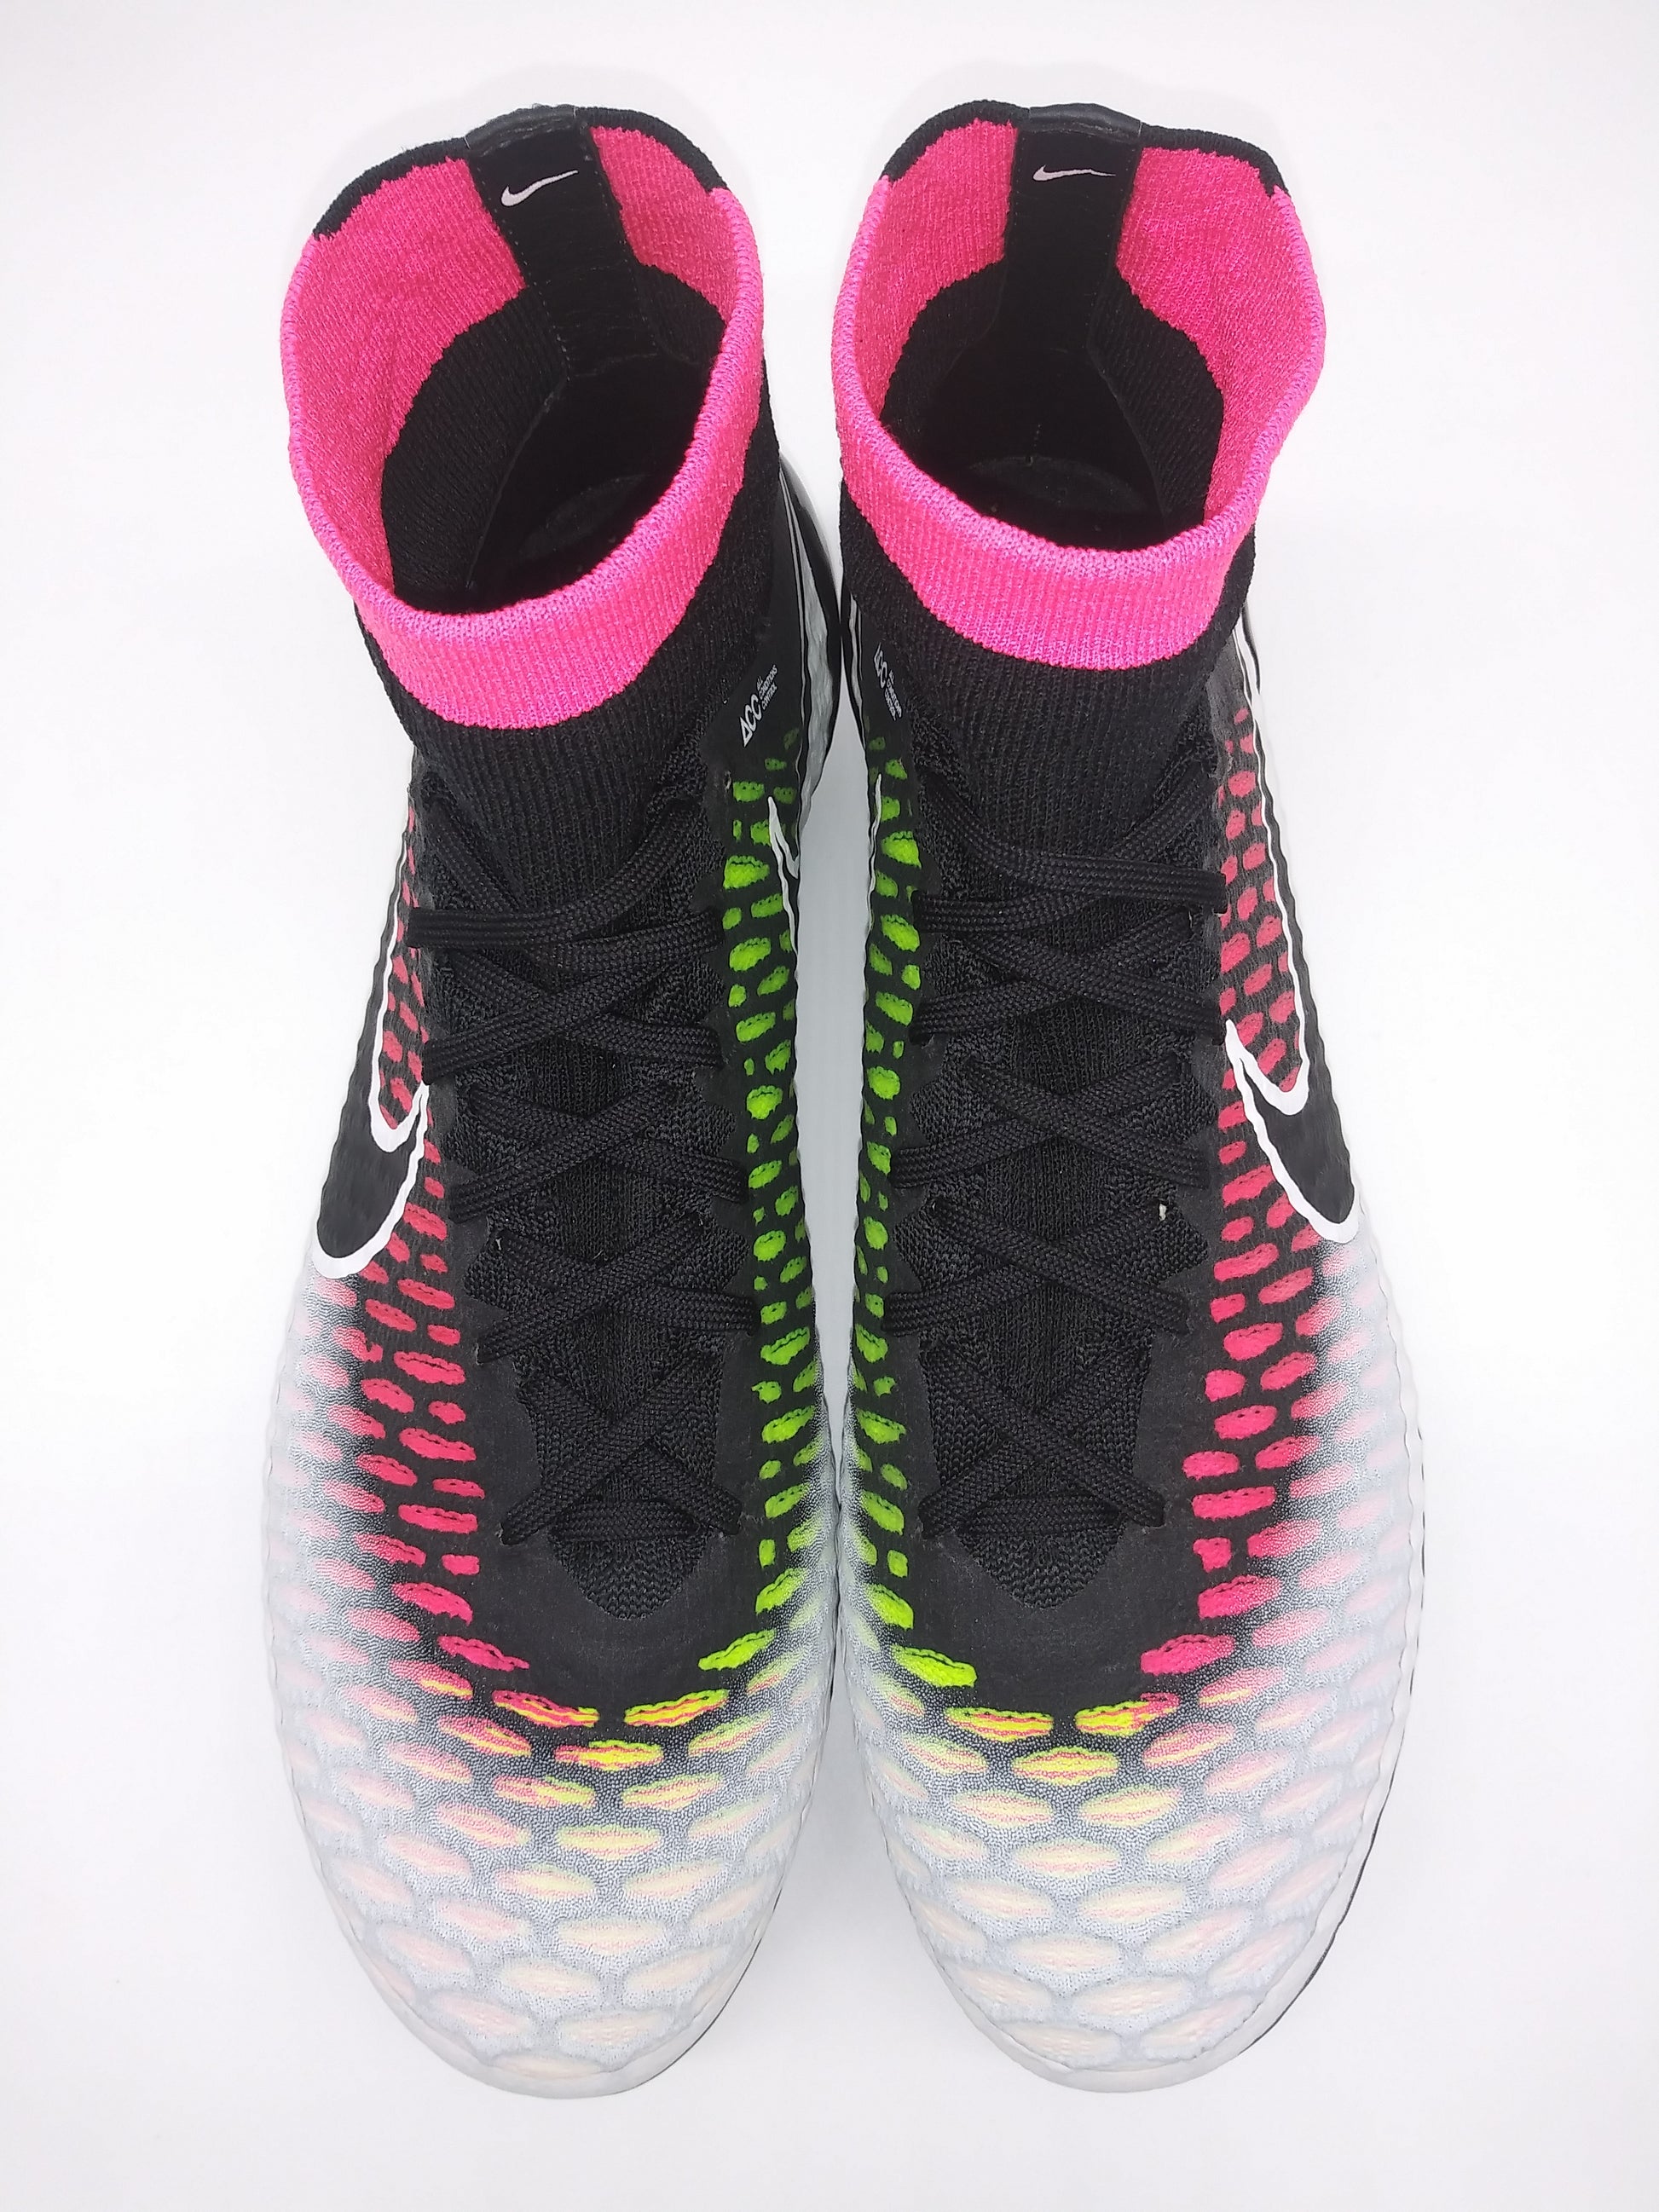 Virksomhedsbeskrivelse Agurk Blot Nike Magista Obra SG White Pink – Villegas Footwear